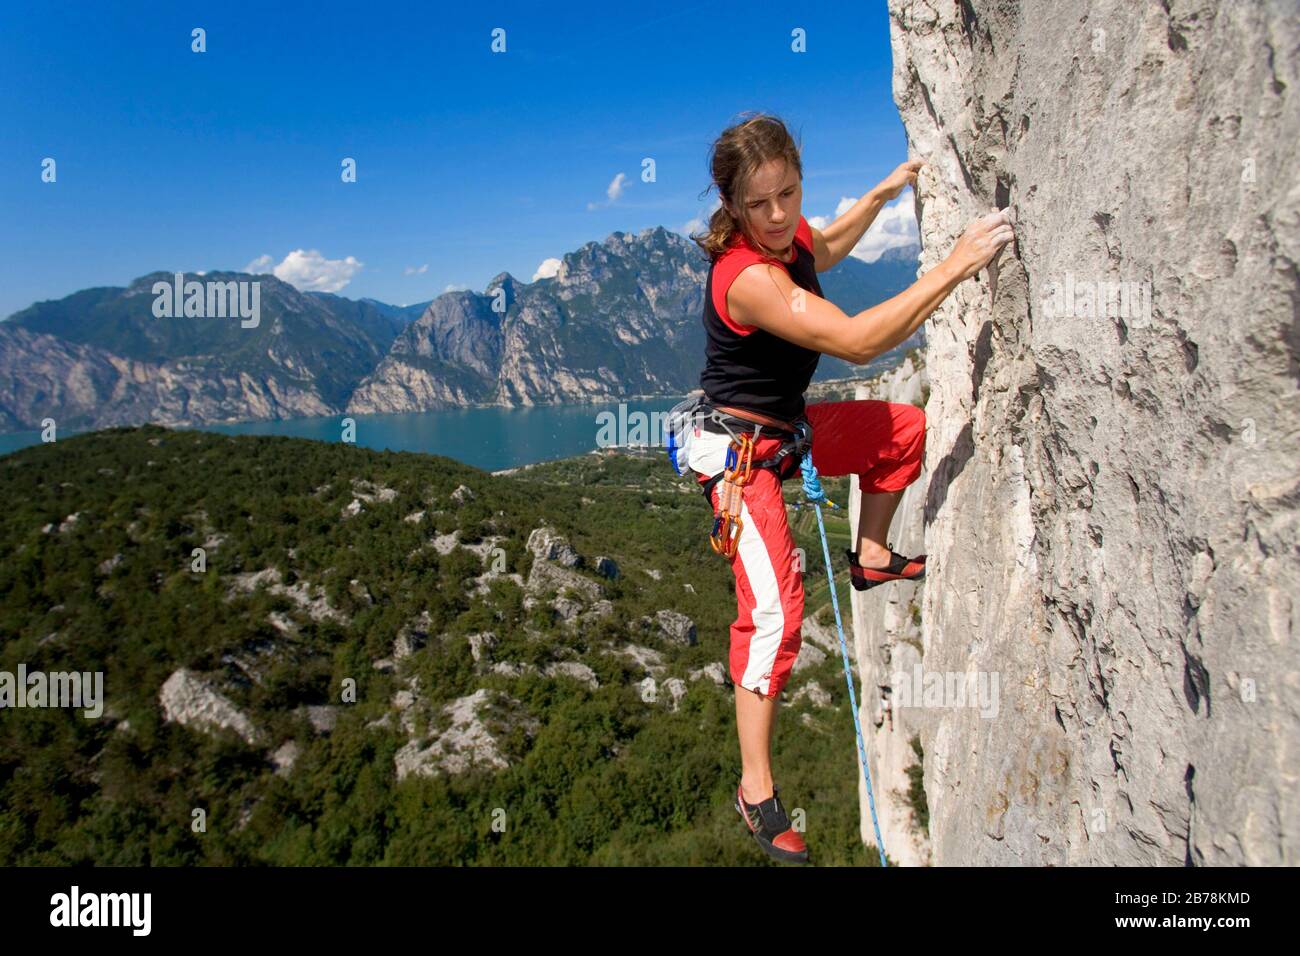 Frau klettert am Berg, Gardasee, Italien Stock Photo